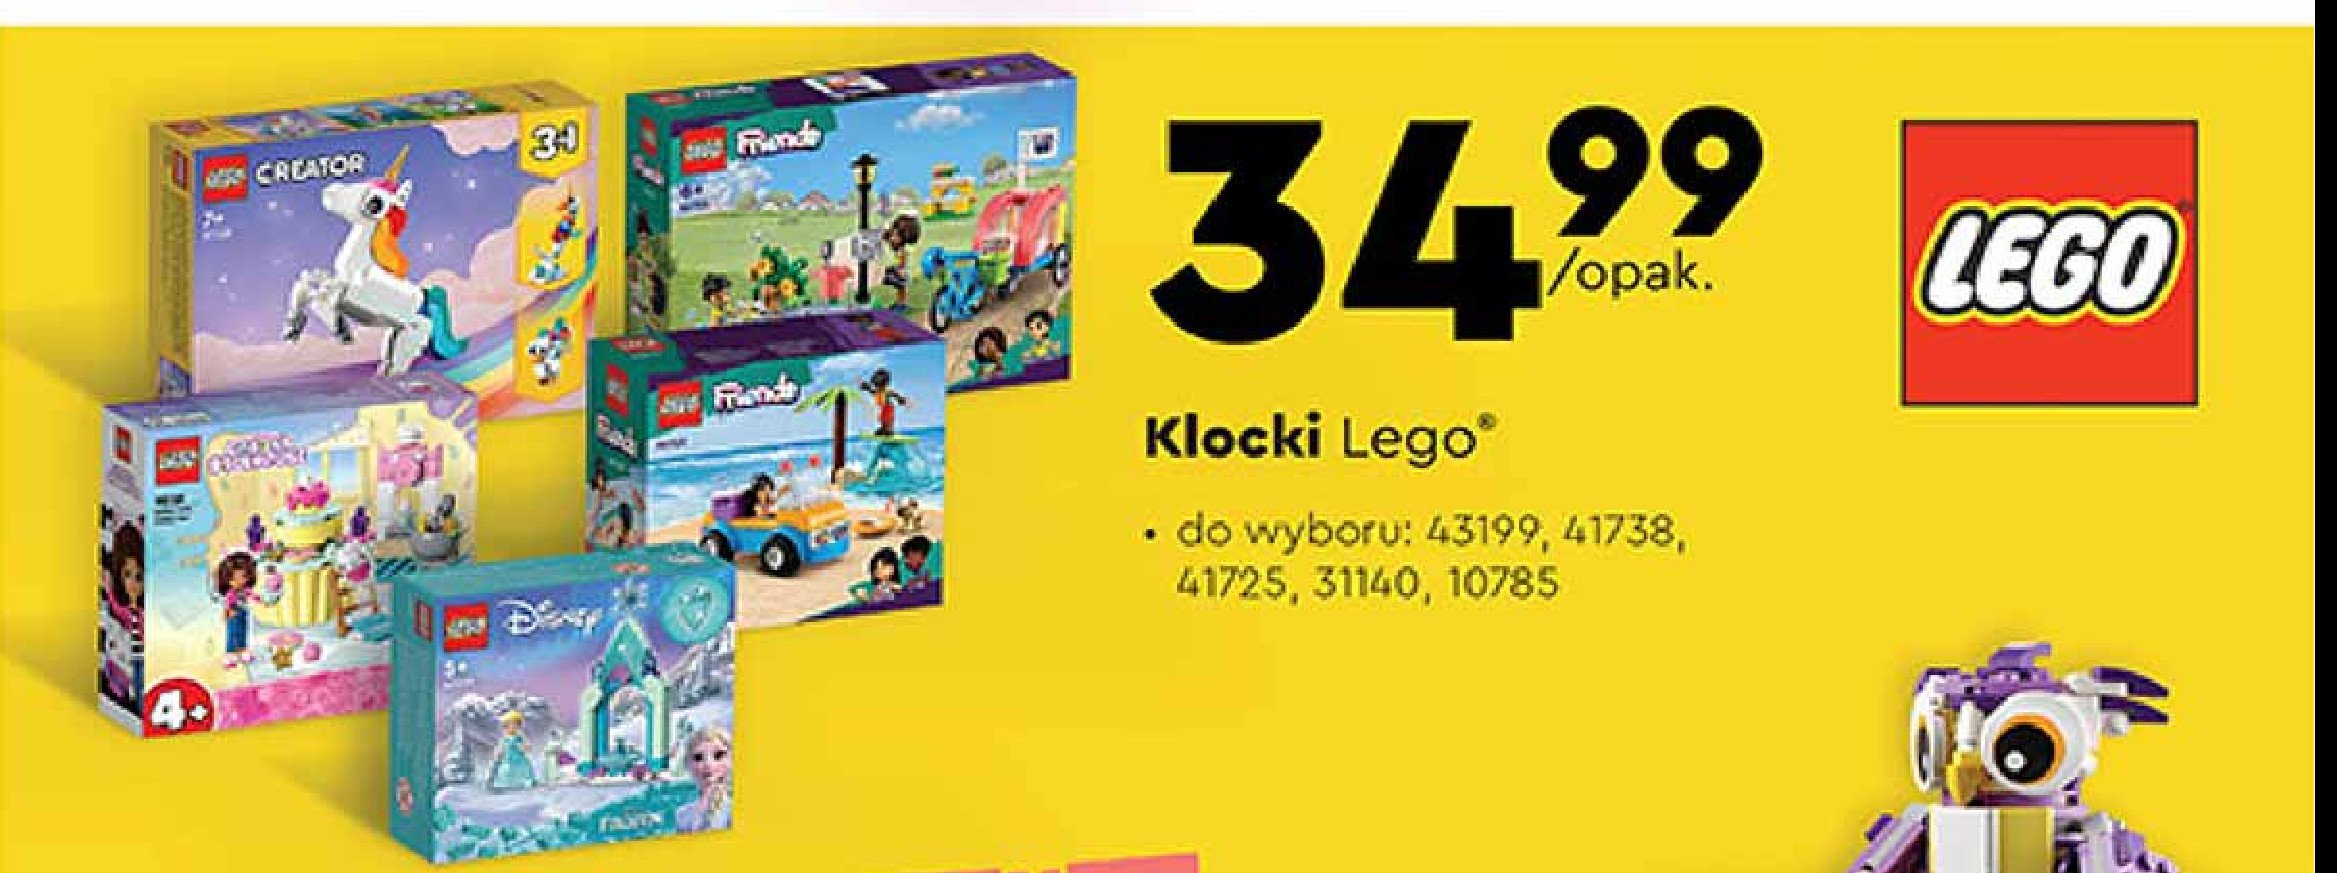 Klocki 31140 Lego creator promocja w Biedronka